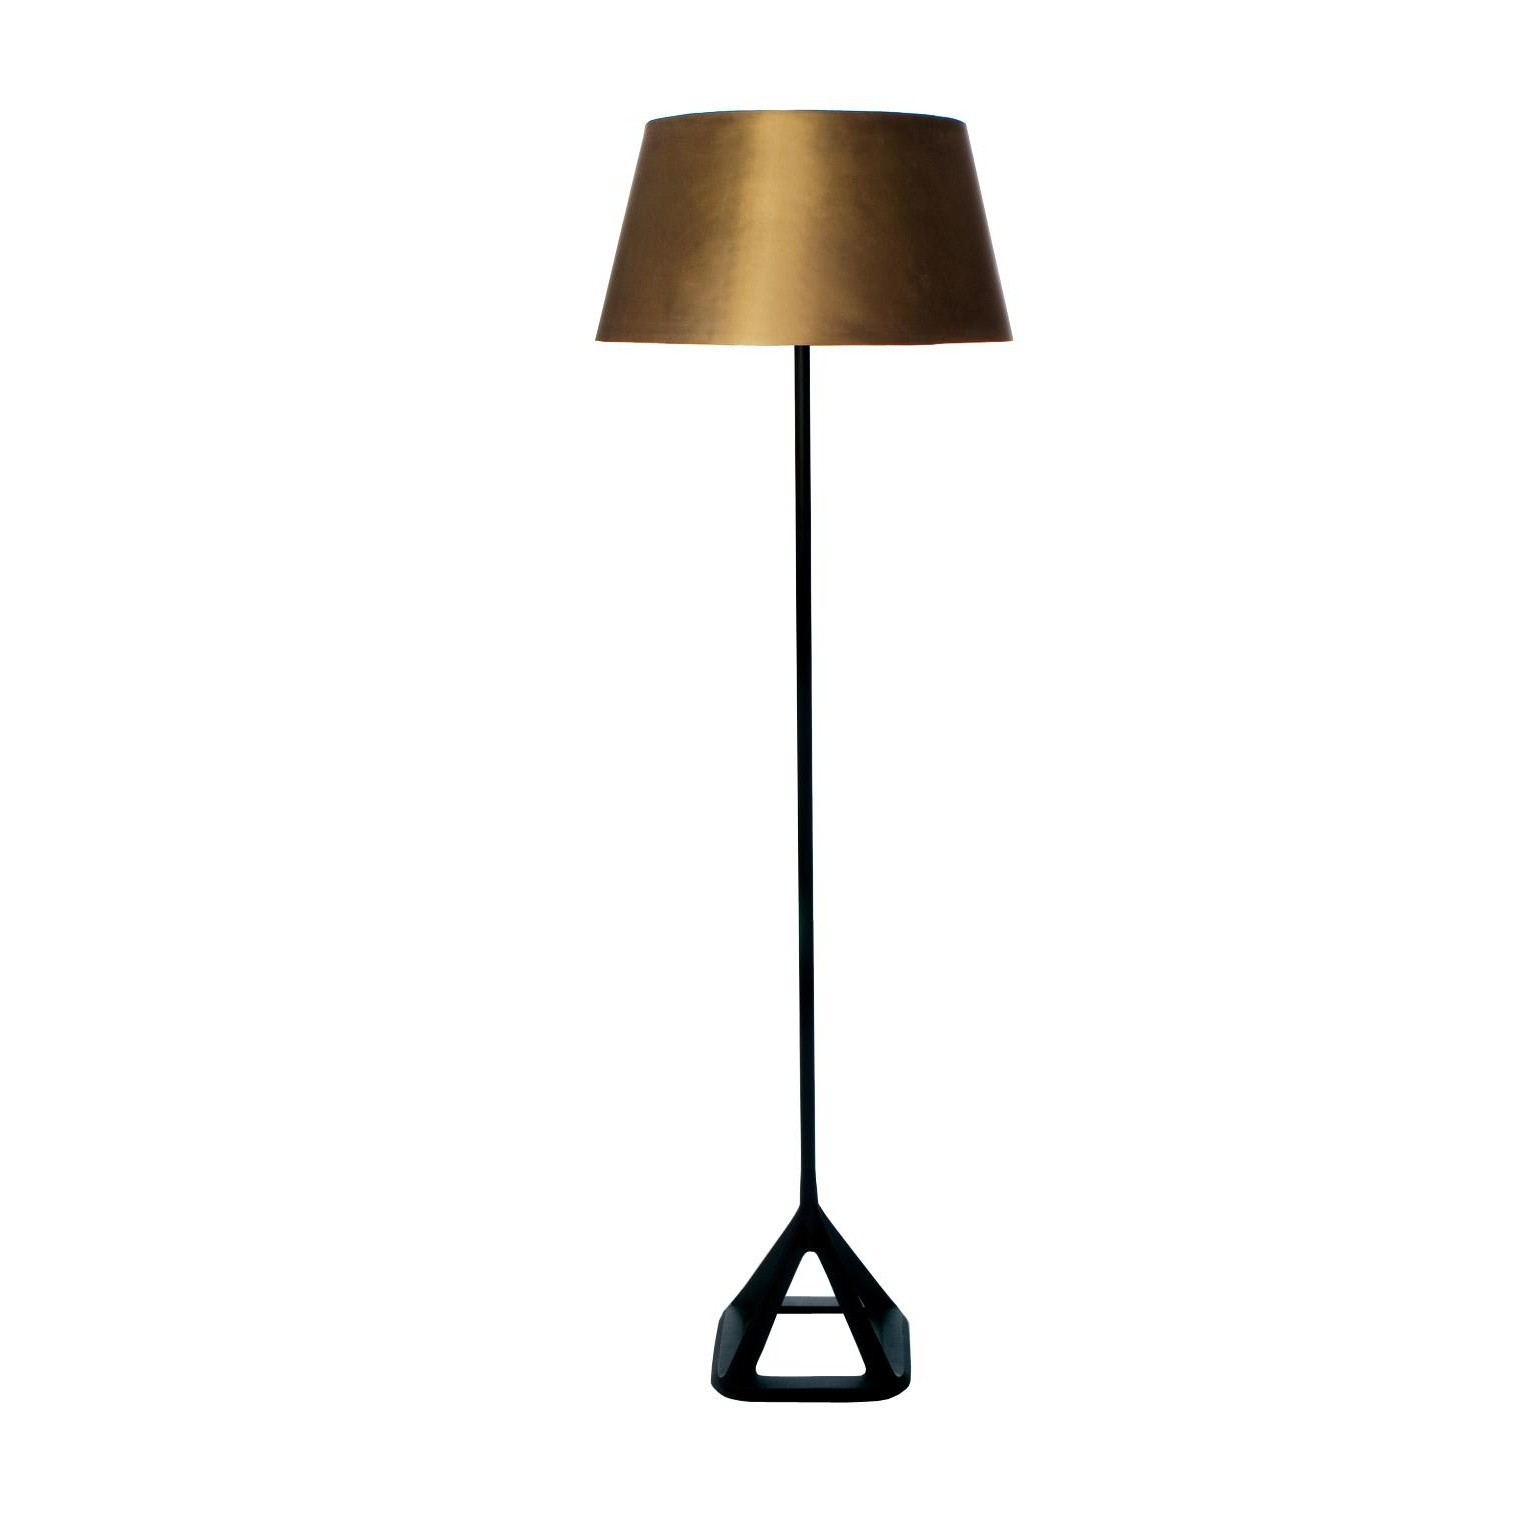 Base Floor Lamp pertaining to sizing 1515 X 1515